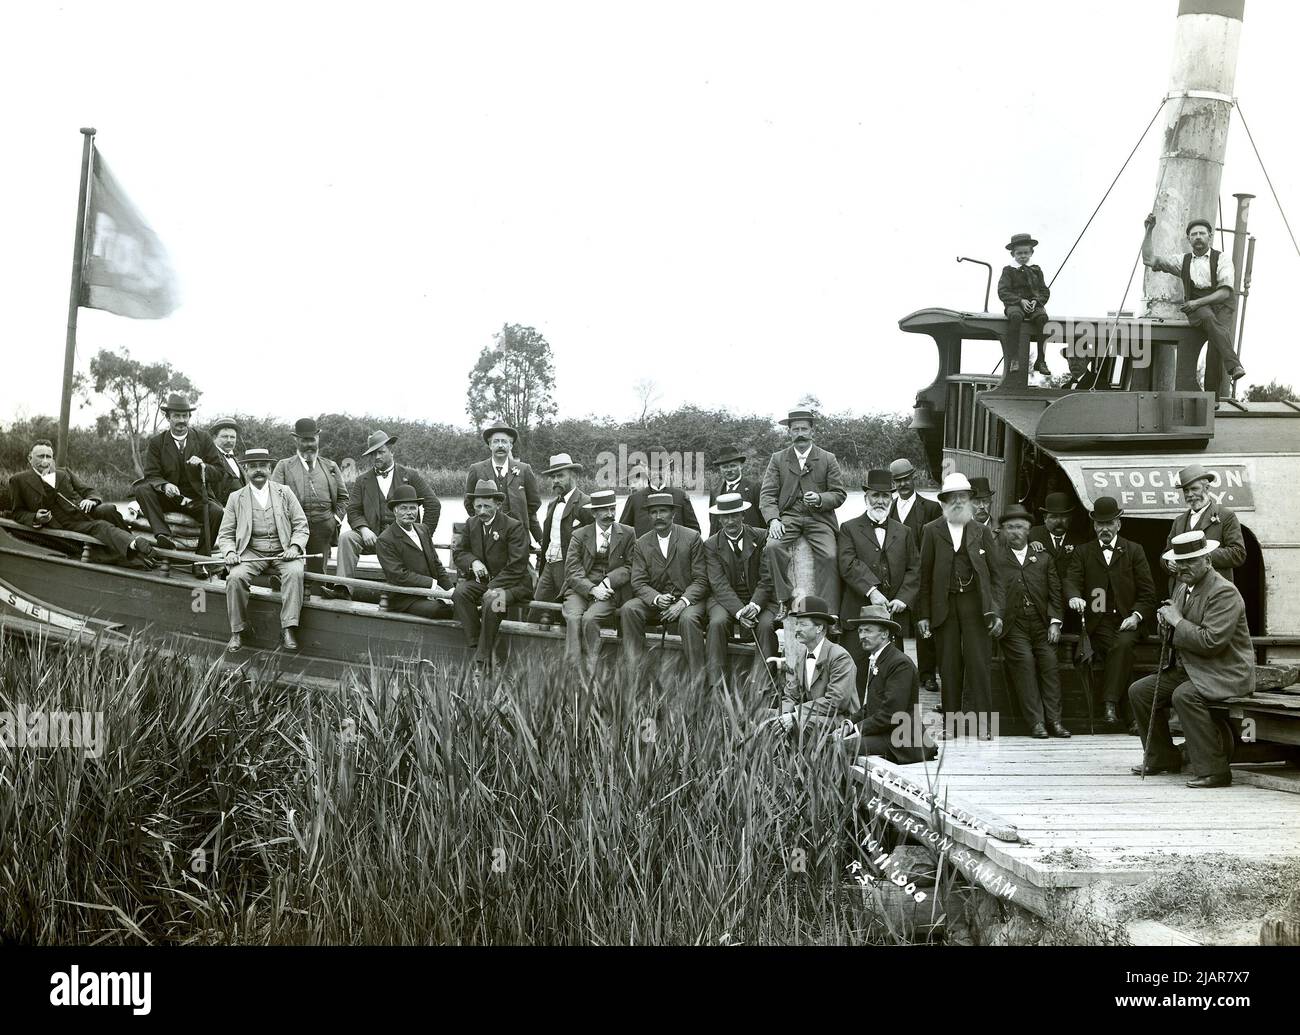 Stockton Ferry, Rose avec des hommes bien habillés à bord à Seaham, Nouvelle-Galles du Sud, 1900 Banque D'Images